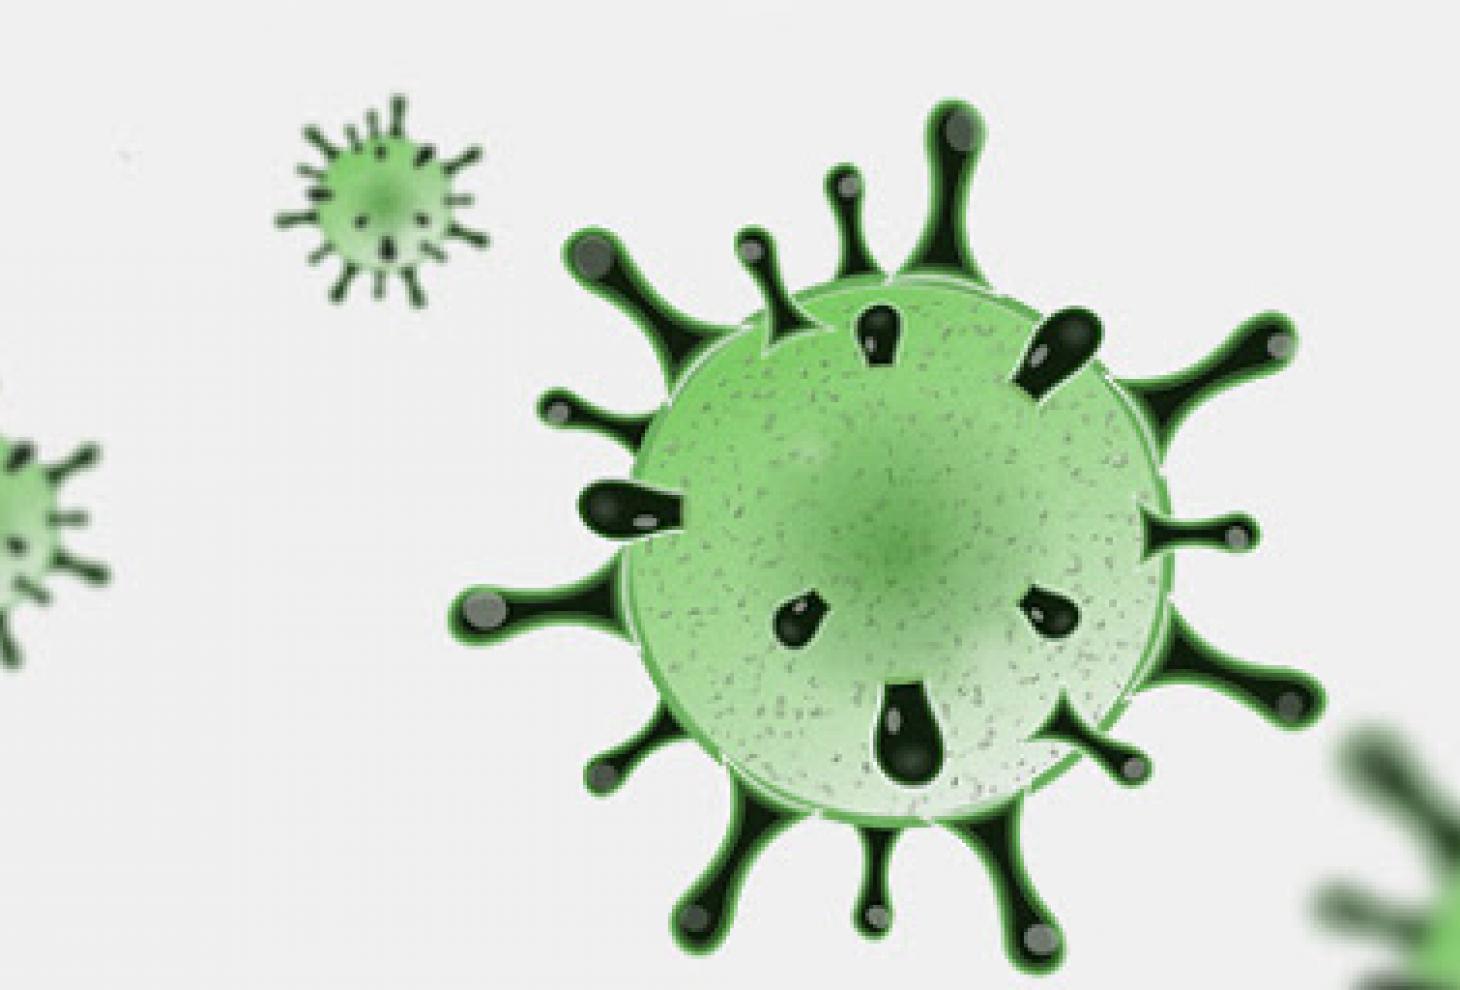  Coronavirus, rispetto a ieri si registra un aumento di 58 nuovi casi in Abruzzo